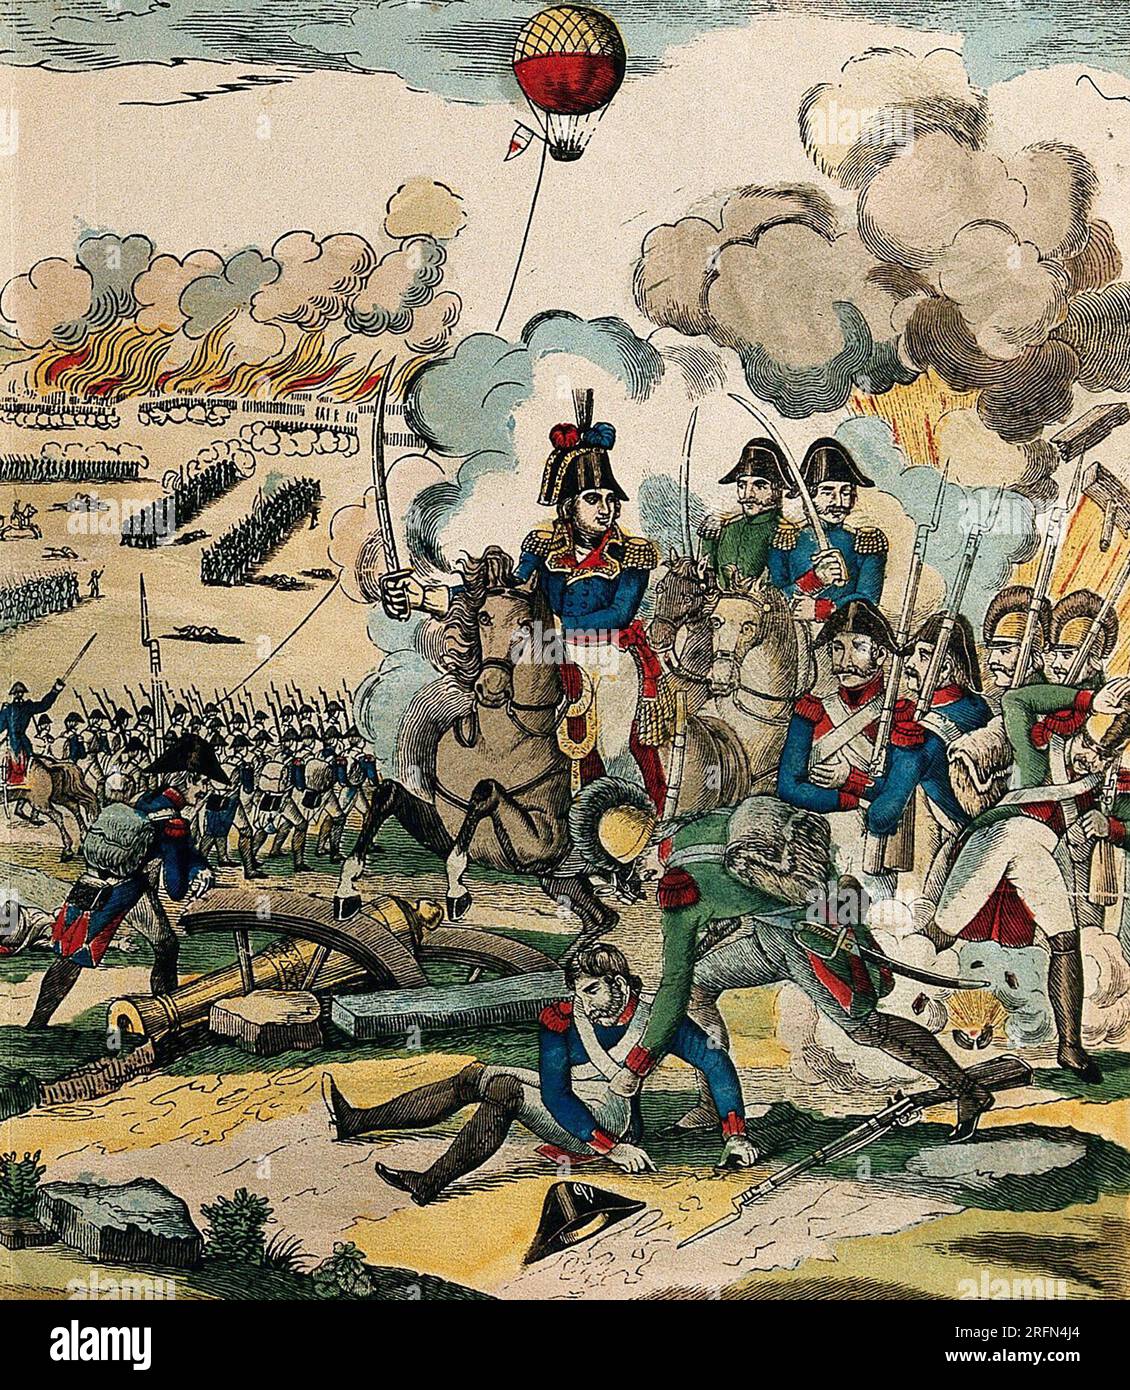 Die Schlacht von Fleurus, 26. Juni 1794, während des Krieges der Ersten Koalition, zwischen der Ersten Französischen Republik und der Koalitionsarmee (Großbritannien, Hannover, Niederländische Republik und Habsburger Monarchie). Dies war die bedeutendste Schlacht der Flandern-Kampagne in den Niedrigländern während der französischen Revolutionskriege. Beachten Sie die Beobachtung im Hintergrund. Stockfoto